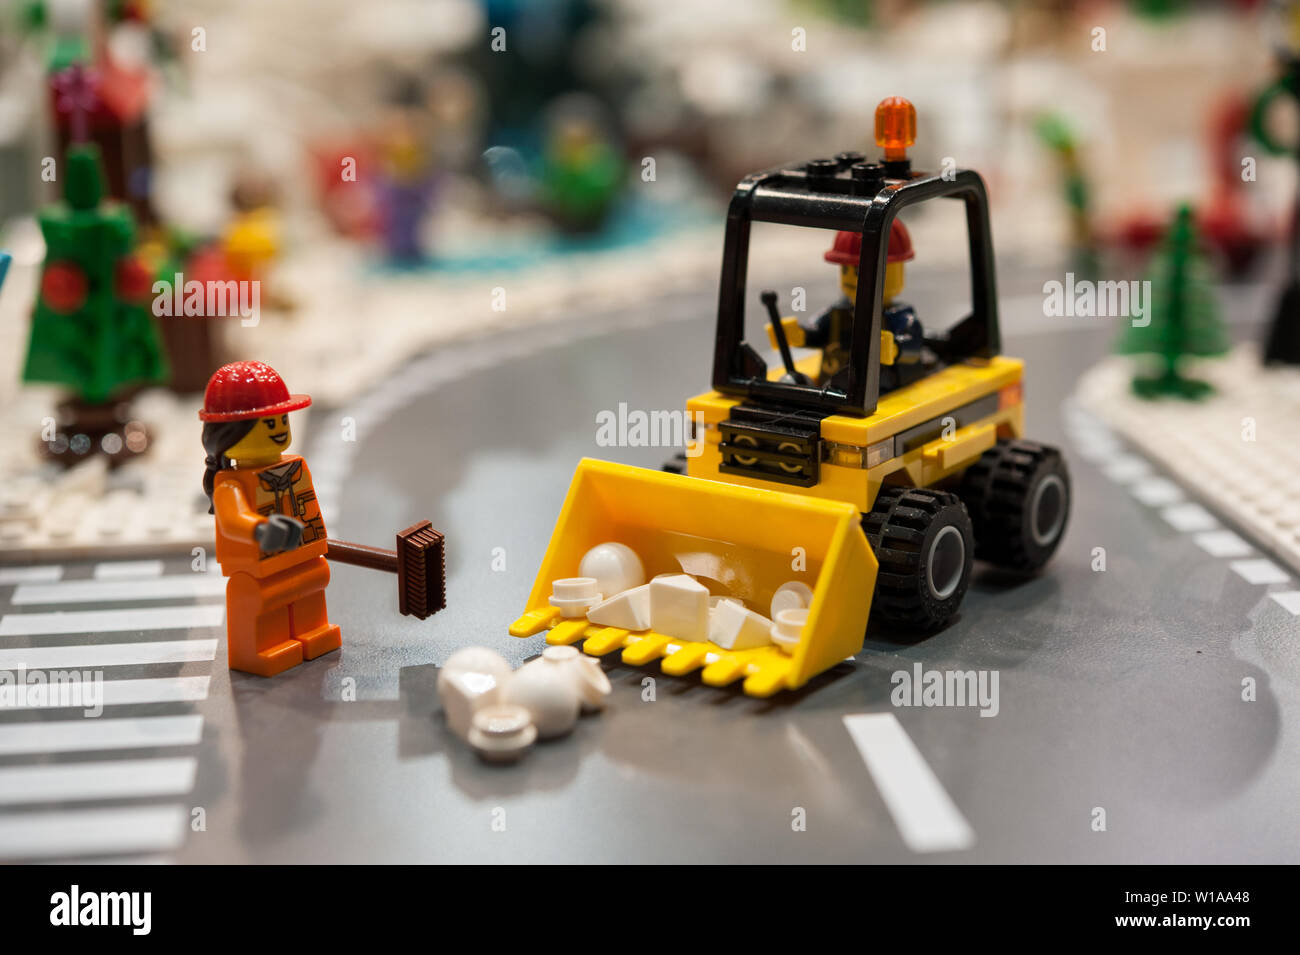 Detail aus Kunststoff Ziegel Modell mit Bulldozer und Beschäftigten im Straßenverkehr. Männer an der Arbeit in einer Stadt Straße. Stockfoto